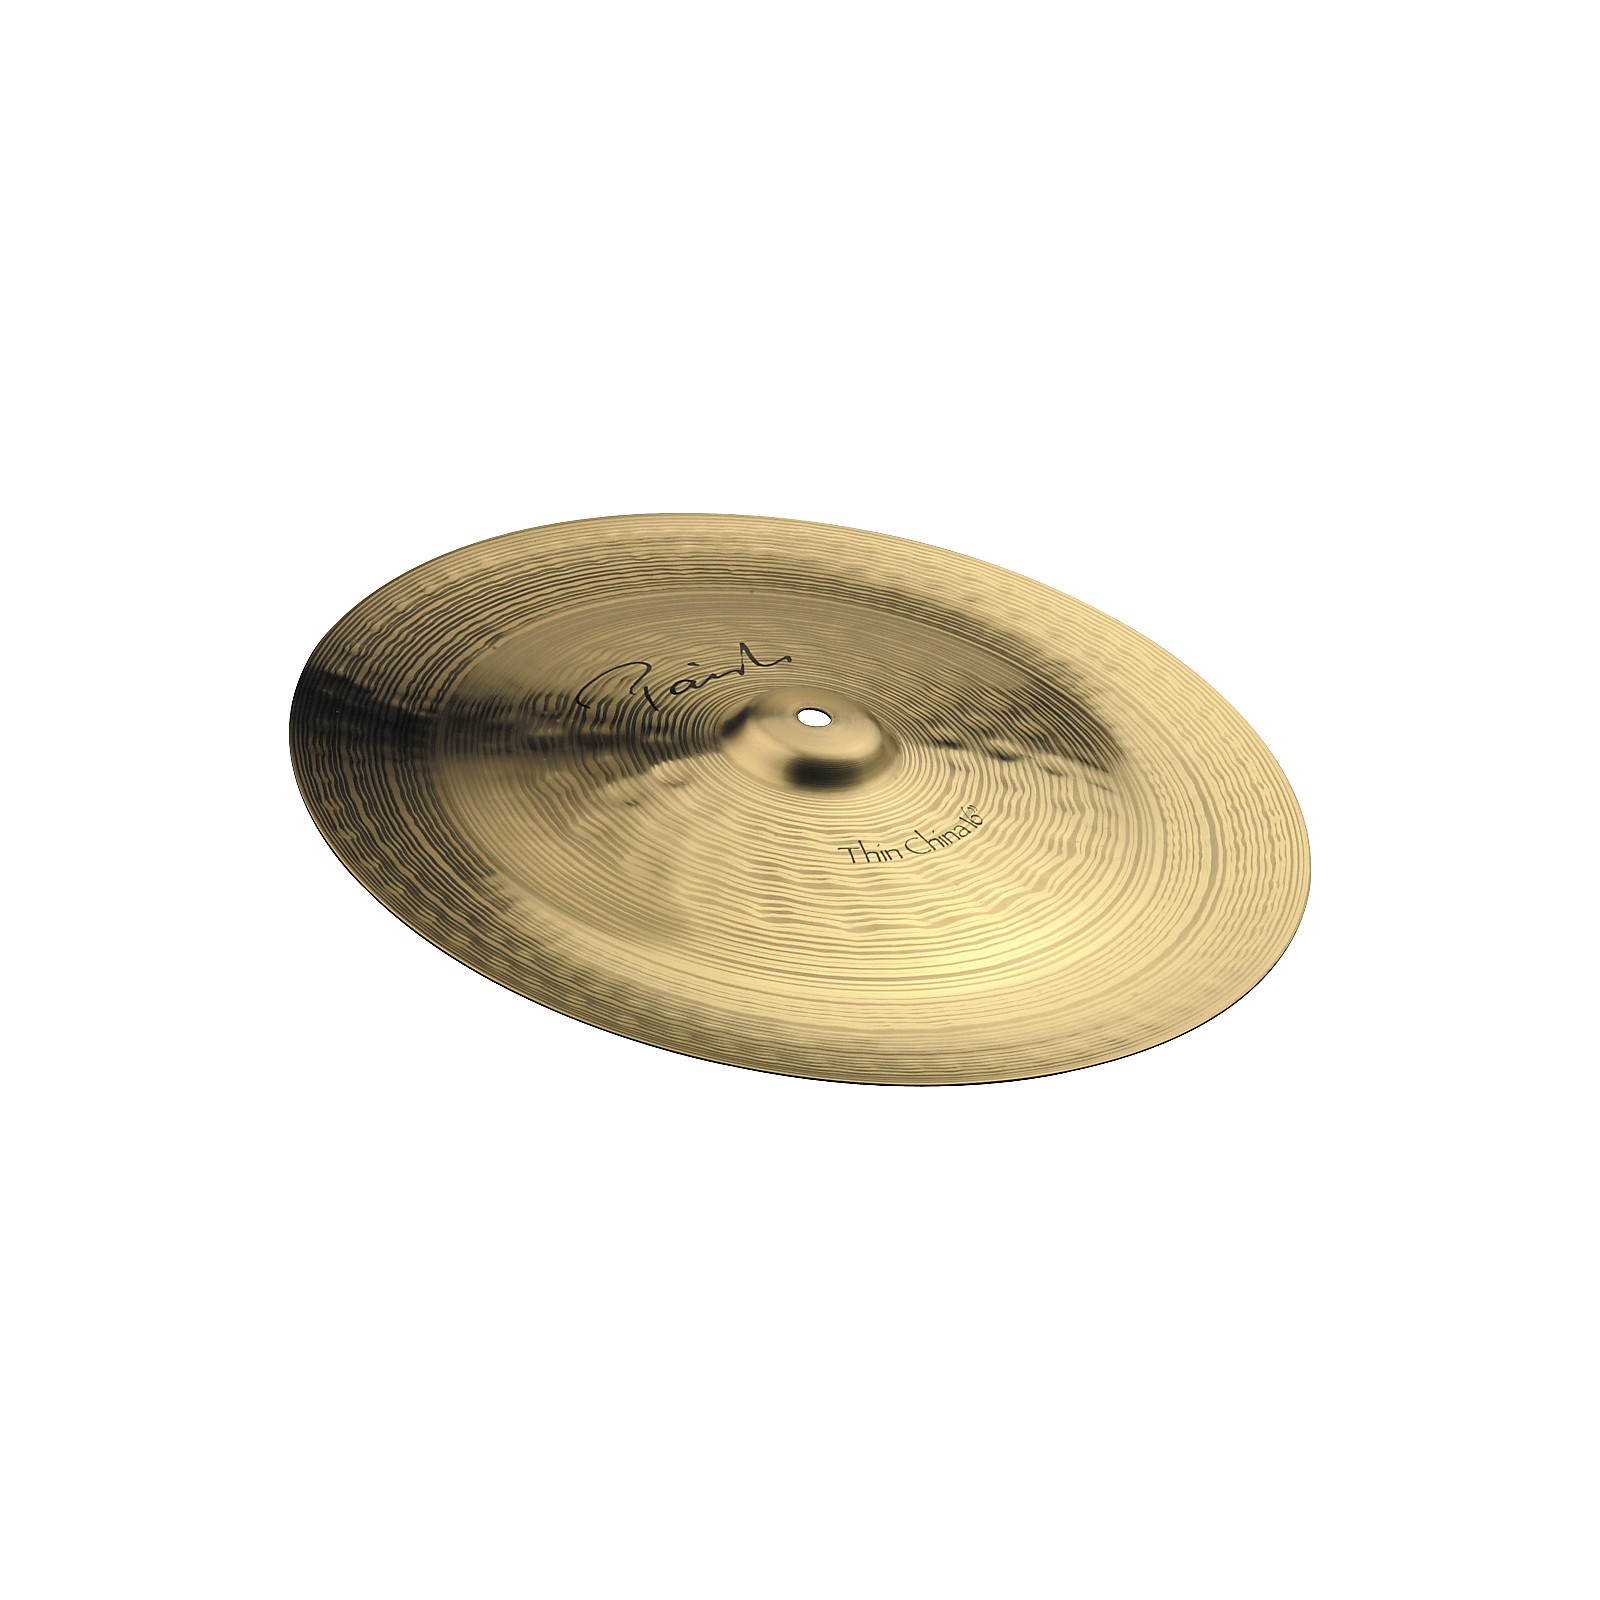 Paiste Signature Thin China Cymbal 18